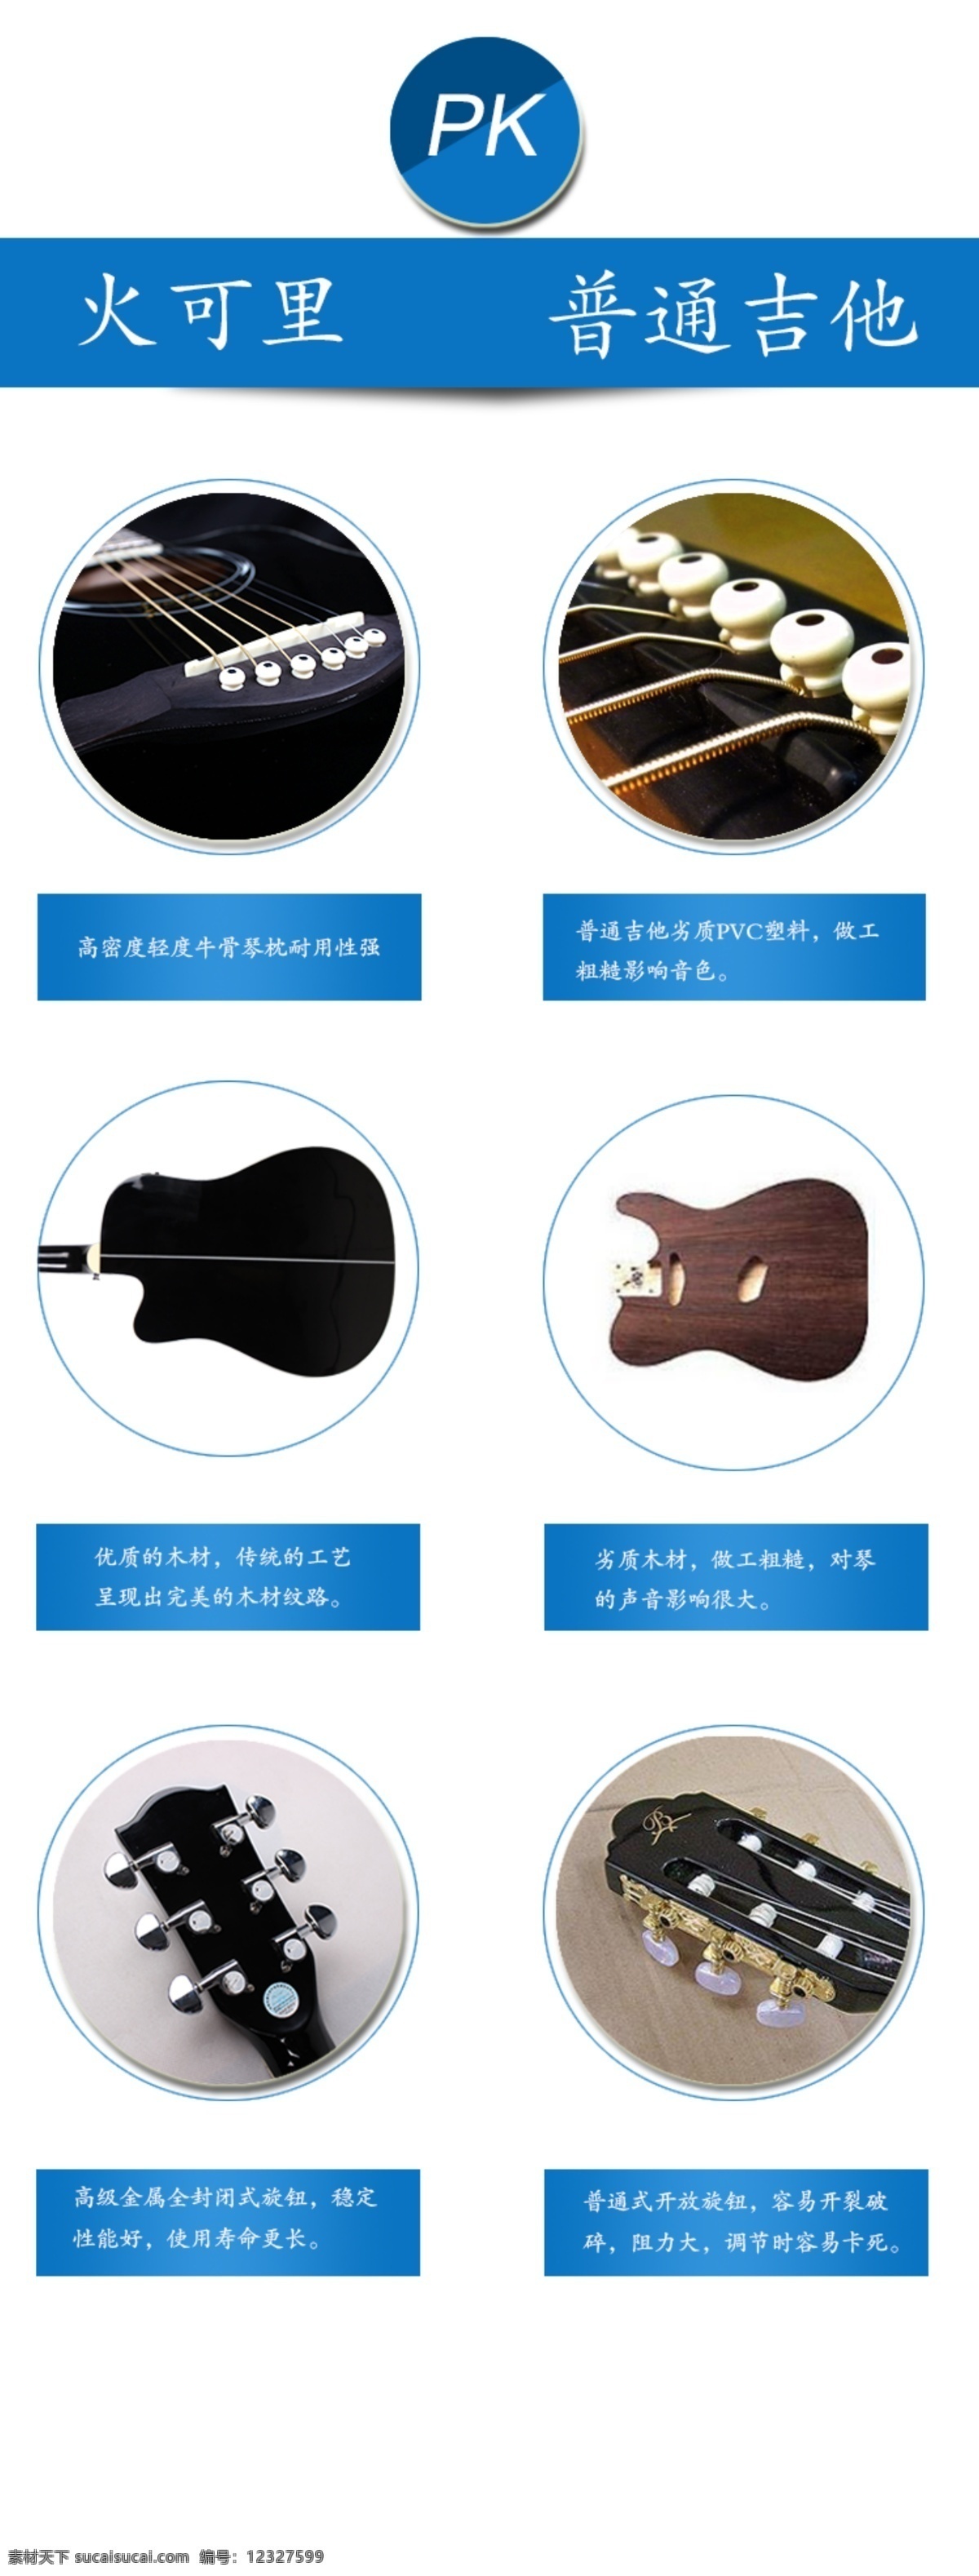 吉他宣传设计 吉他 宣传 淘宝素材 淘宝设计 淘宝模板下载 白色